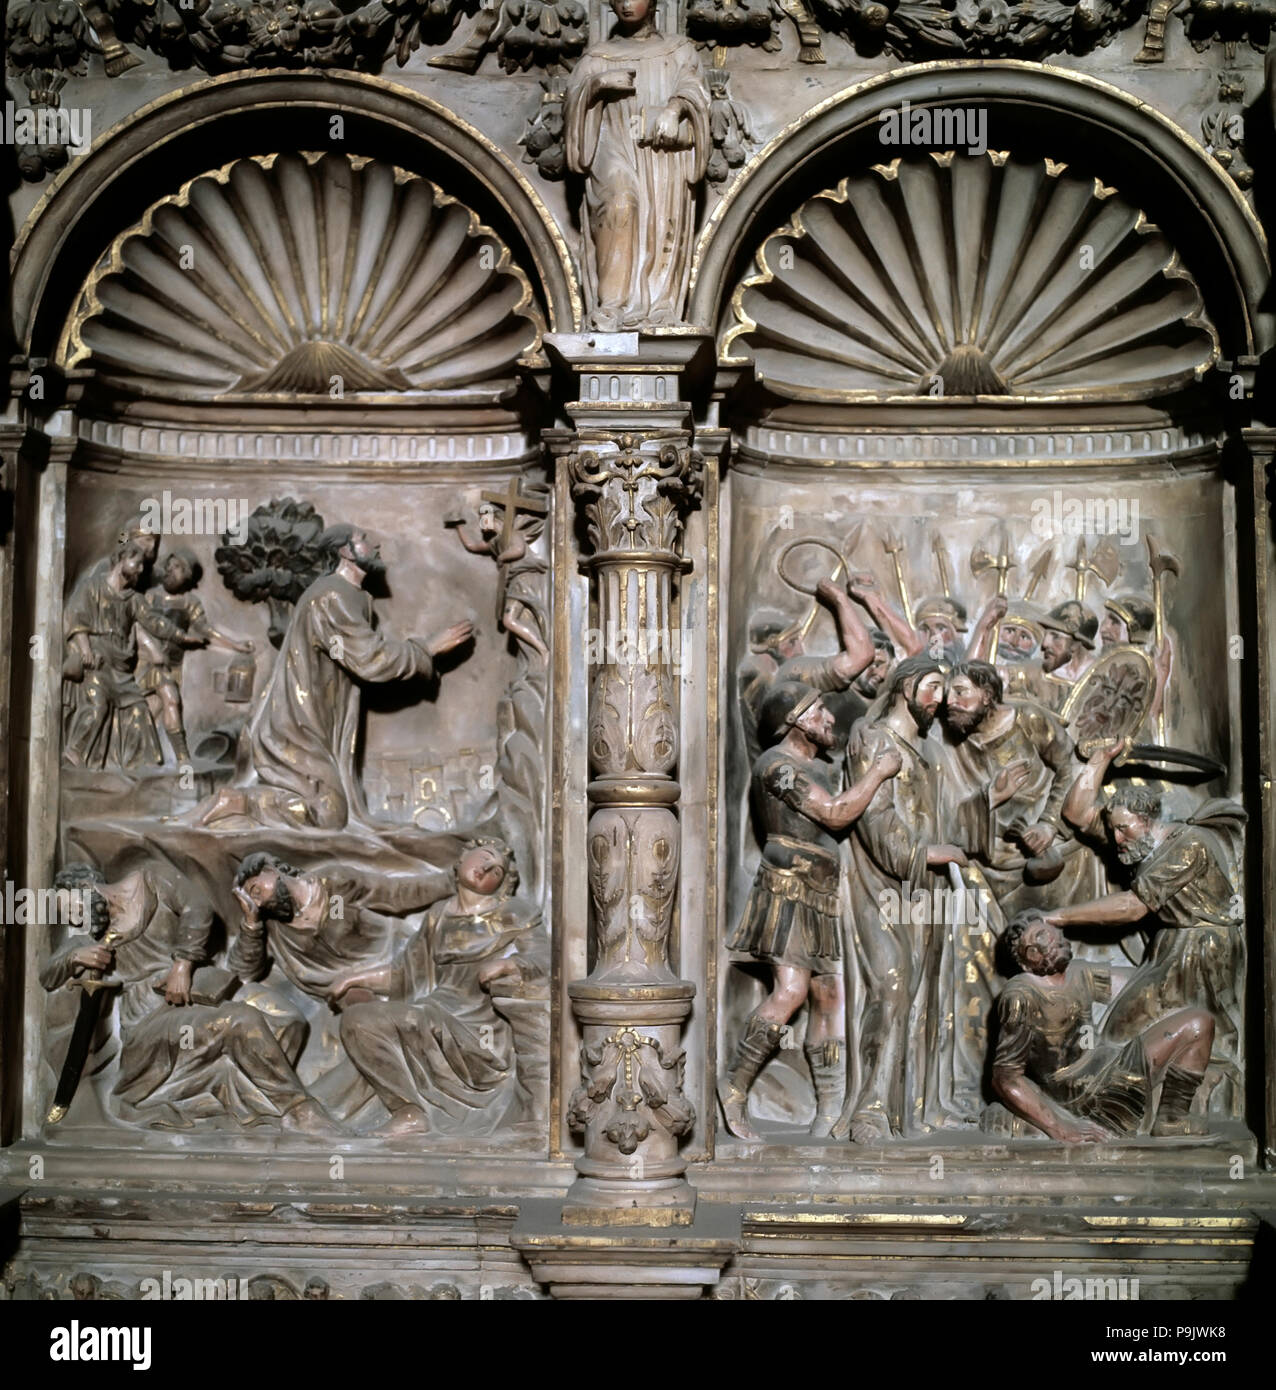 Detalle de la base del retablo en el altar mayor de la Catedral de Barbastro, con escenas... Foto de stock